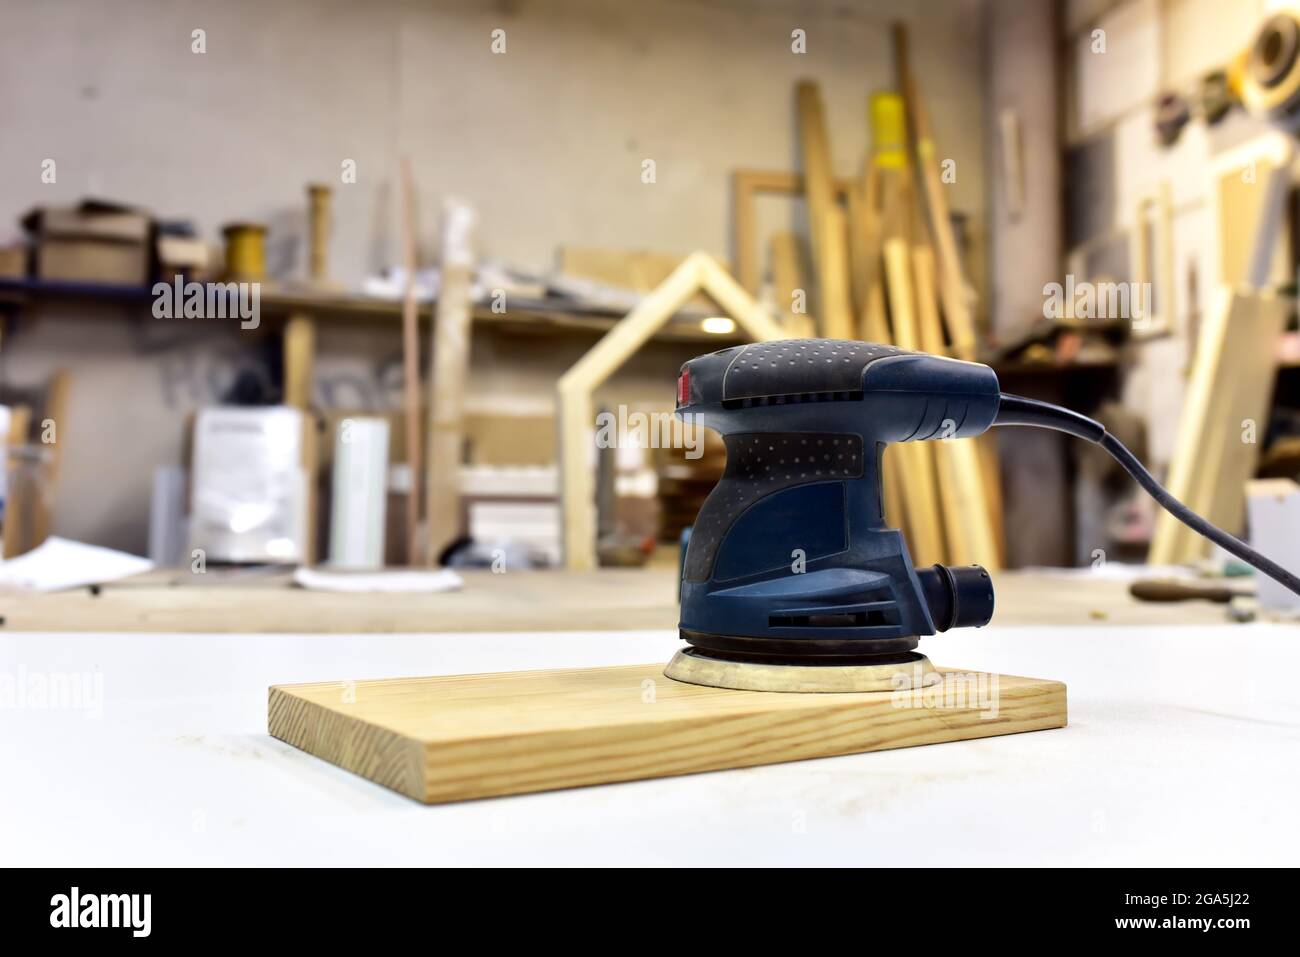 Elektrischer Holzschleifer auf Holztisch in der Werkstatt. Werkzeugkonzept  Holzbearbeitung. Möbel Metallpolierer, Dander DIY Power-Tools Puffer  Schleifmaschine Stockfotografie - Alamy